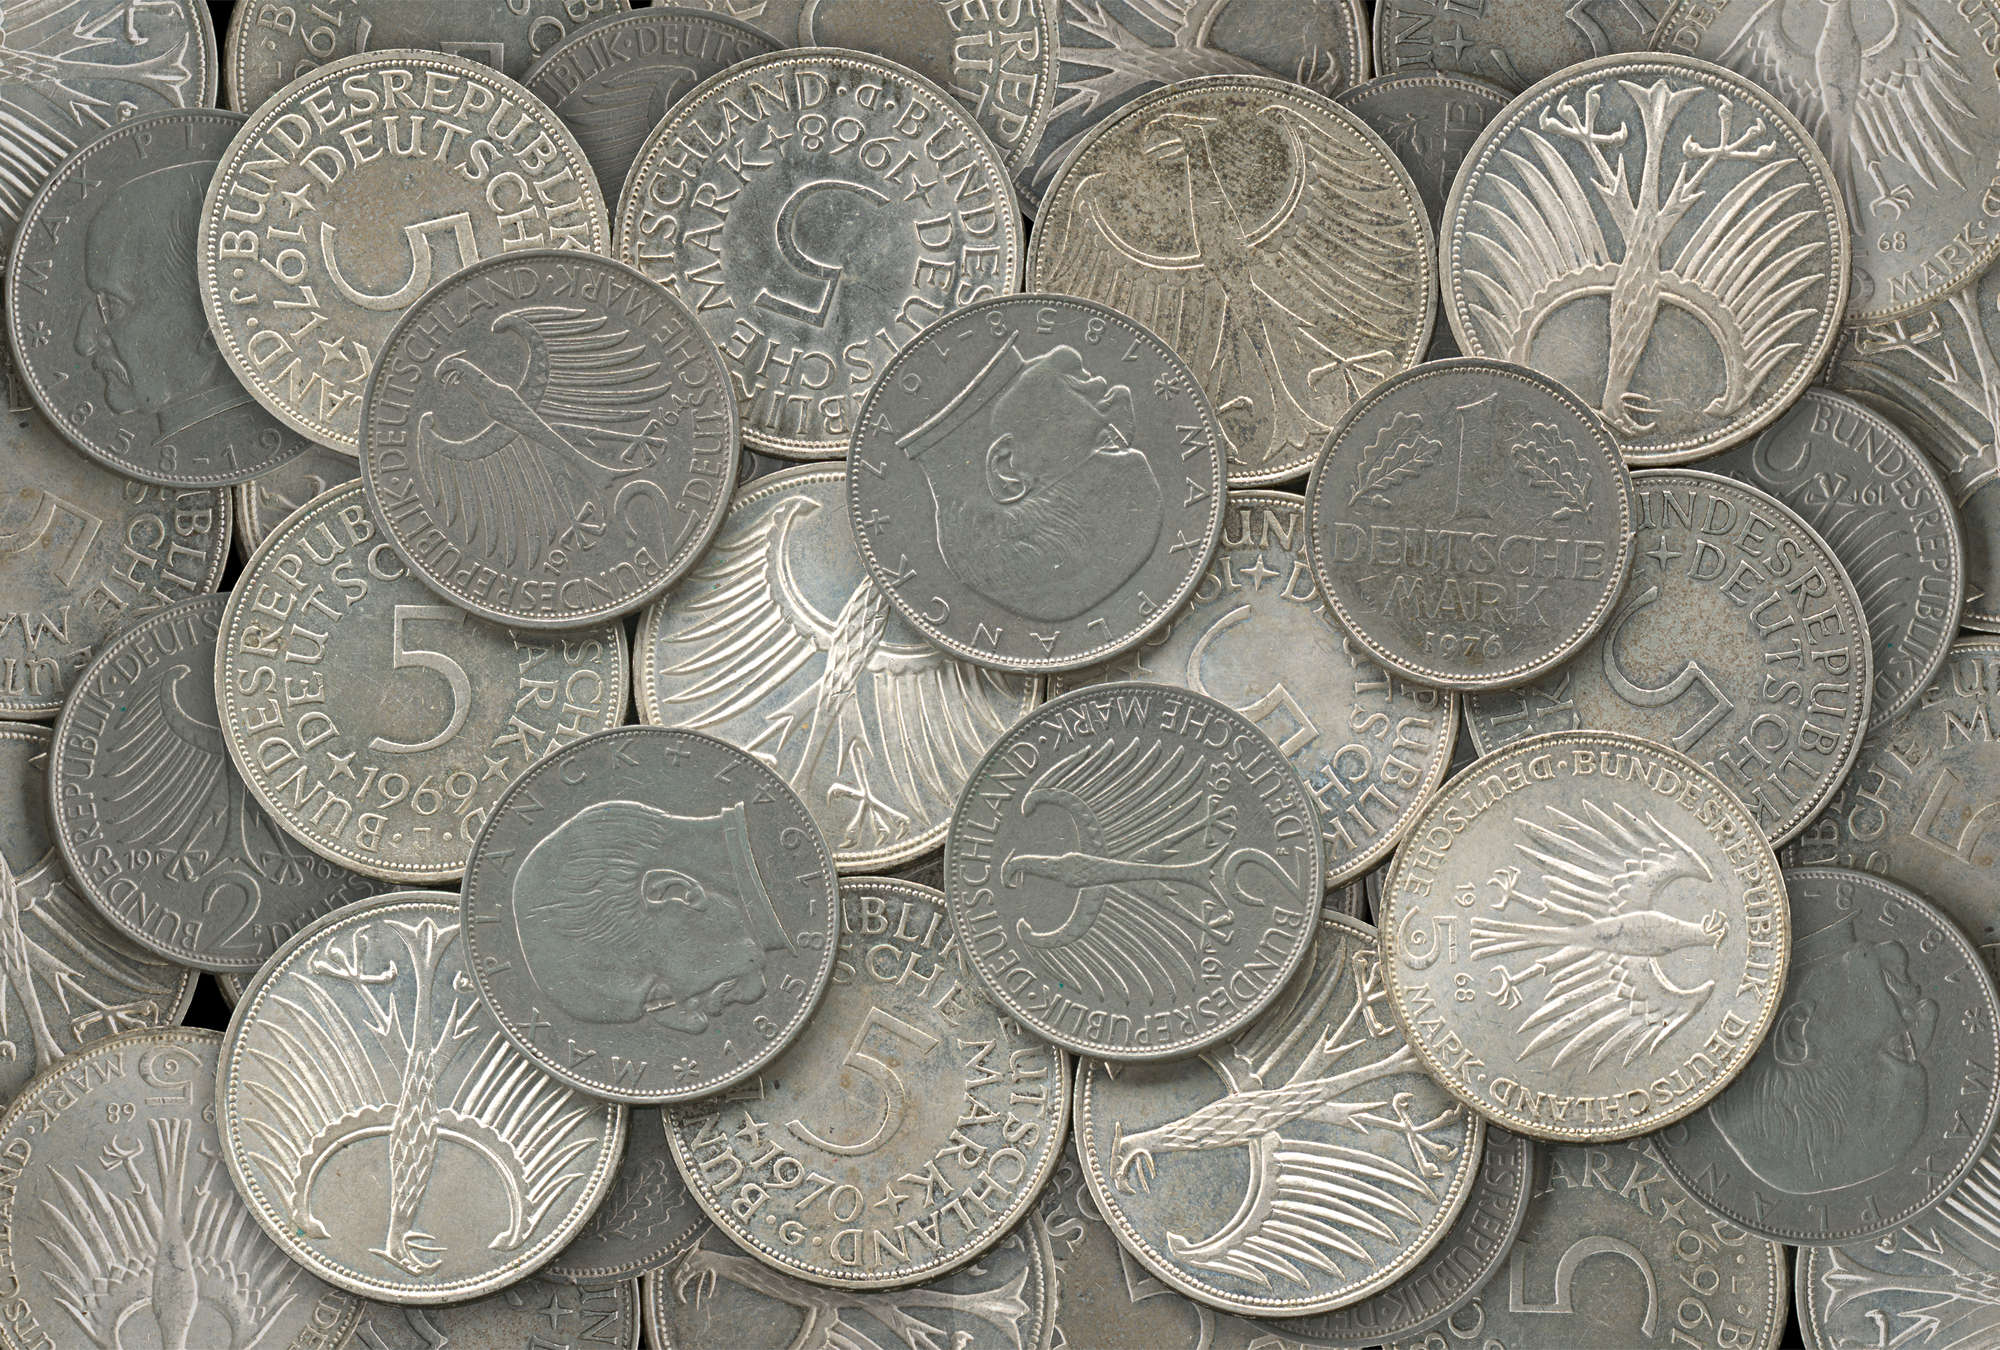             Zilveren munten muurschildering in detail met 3D effect
        